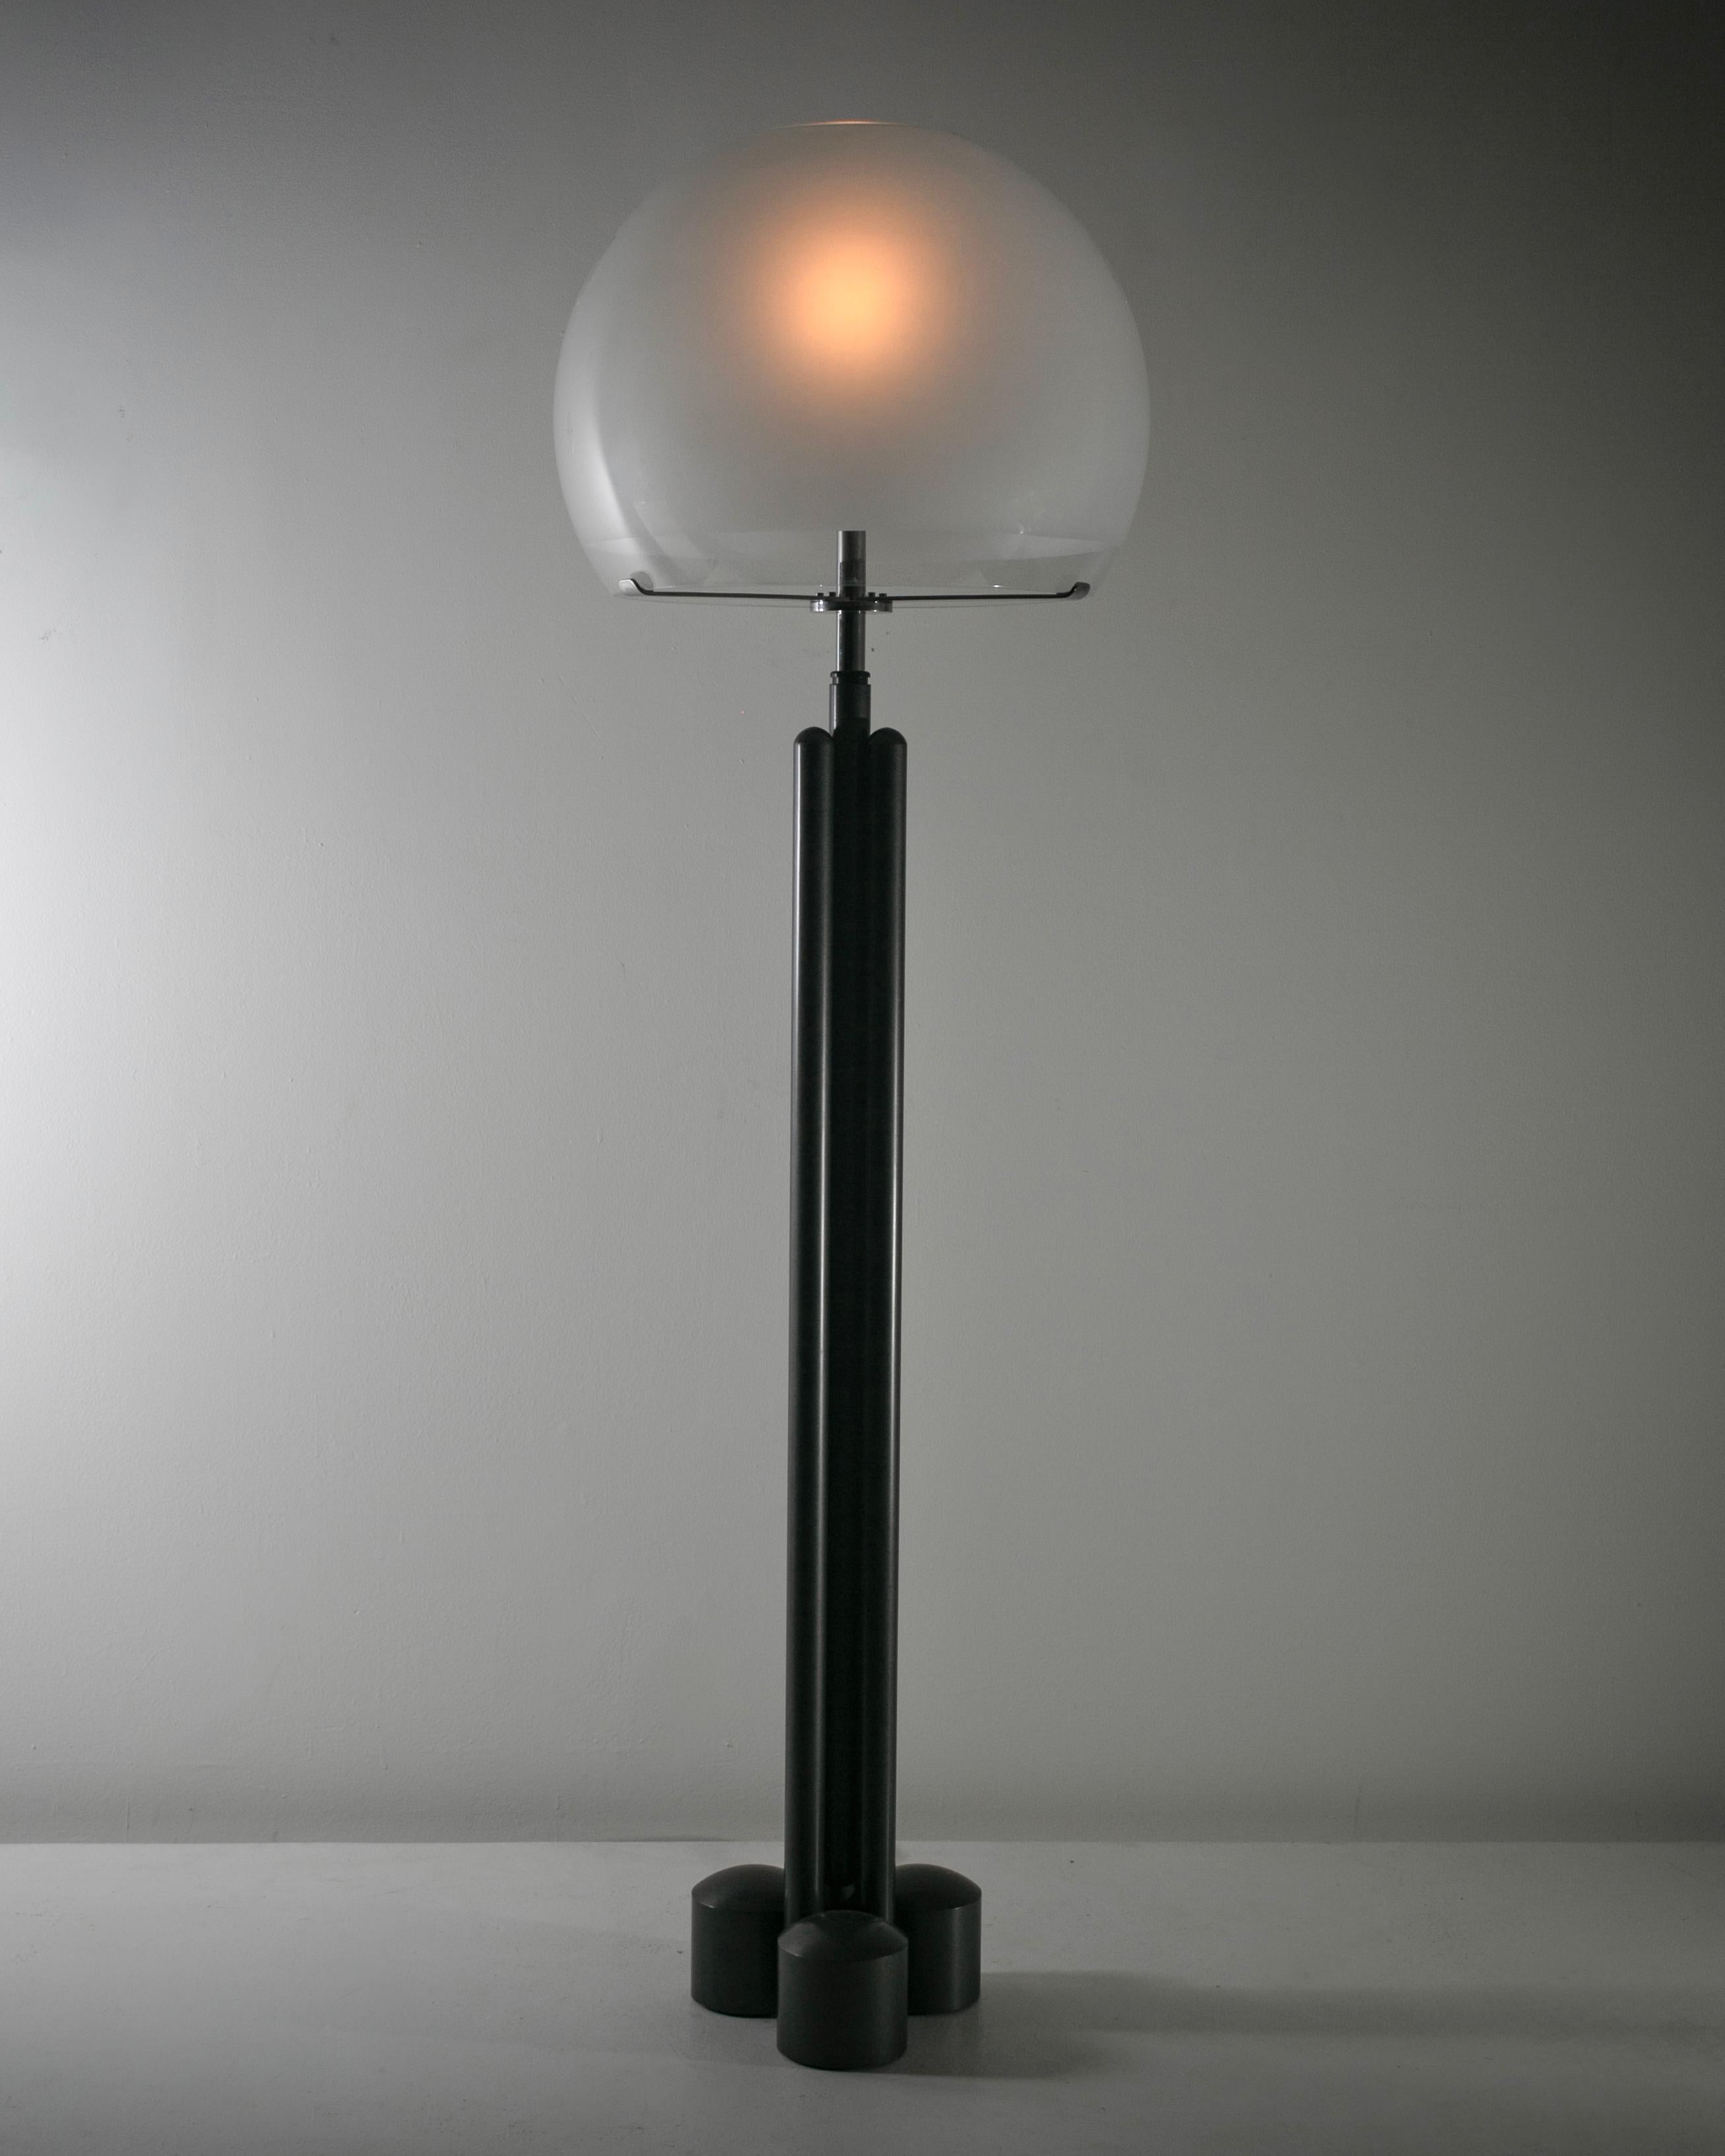 LTE13 Lampadaire de Luigi Caccia Dominioni pour Azucena Conçu et fabriqué en Italie, en 1966. Ce grand lampadaire se compose d'un diffuseur massif en verre soufflé et gravé, doté d'un petit panneau d'observation transparent qui court sur le bord